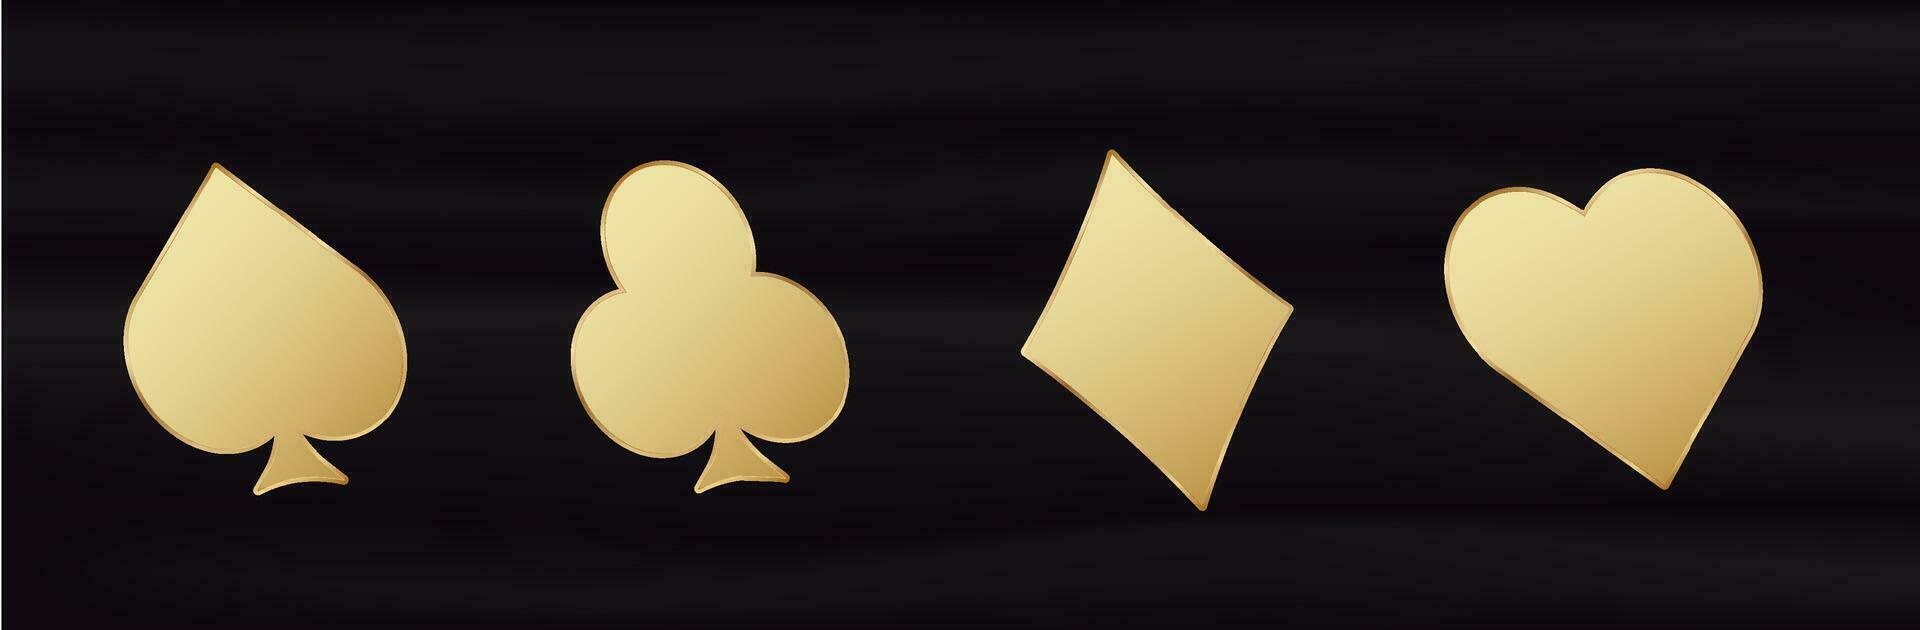 gouden kaart 3d pakken. geel helling symbool van het gokken geluk in poker en geslaagd spel in casino met blackjack en weddenschappen vector